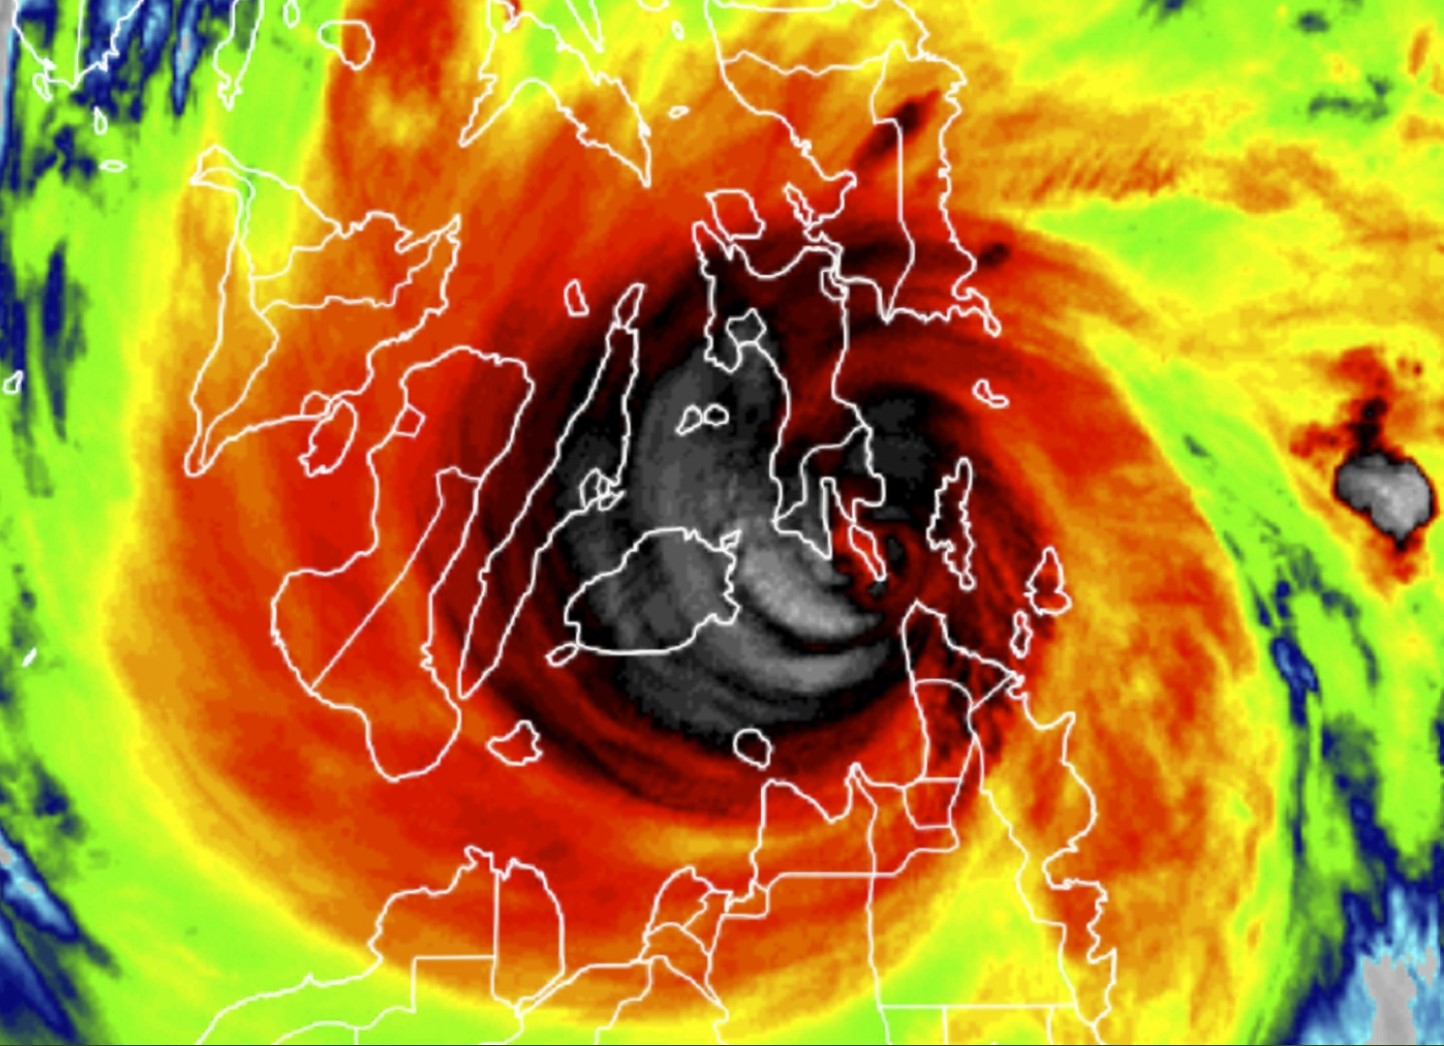 Супер Тайфун Рай обрушился на Филиппины, вызвав эвакуацию десятков тысяч человек на видео и фотографиях